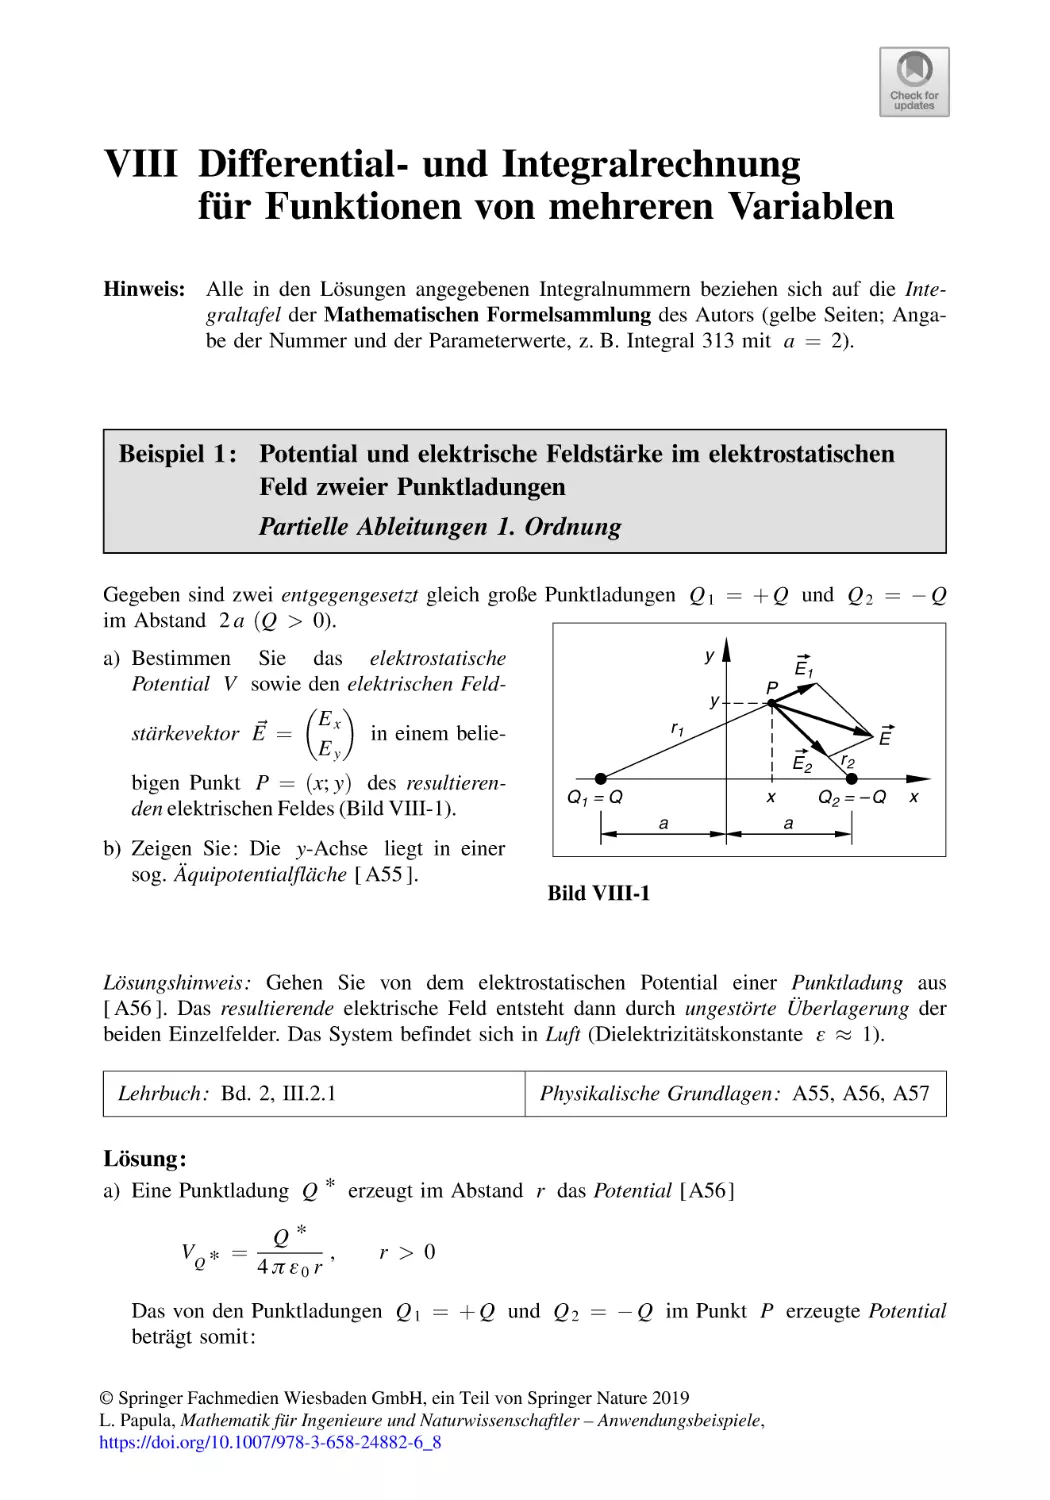 VIII Differential- und Integralrechnung für Funktionen von mehreren Variablen
Beispiel 1